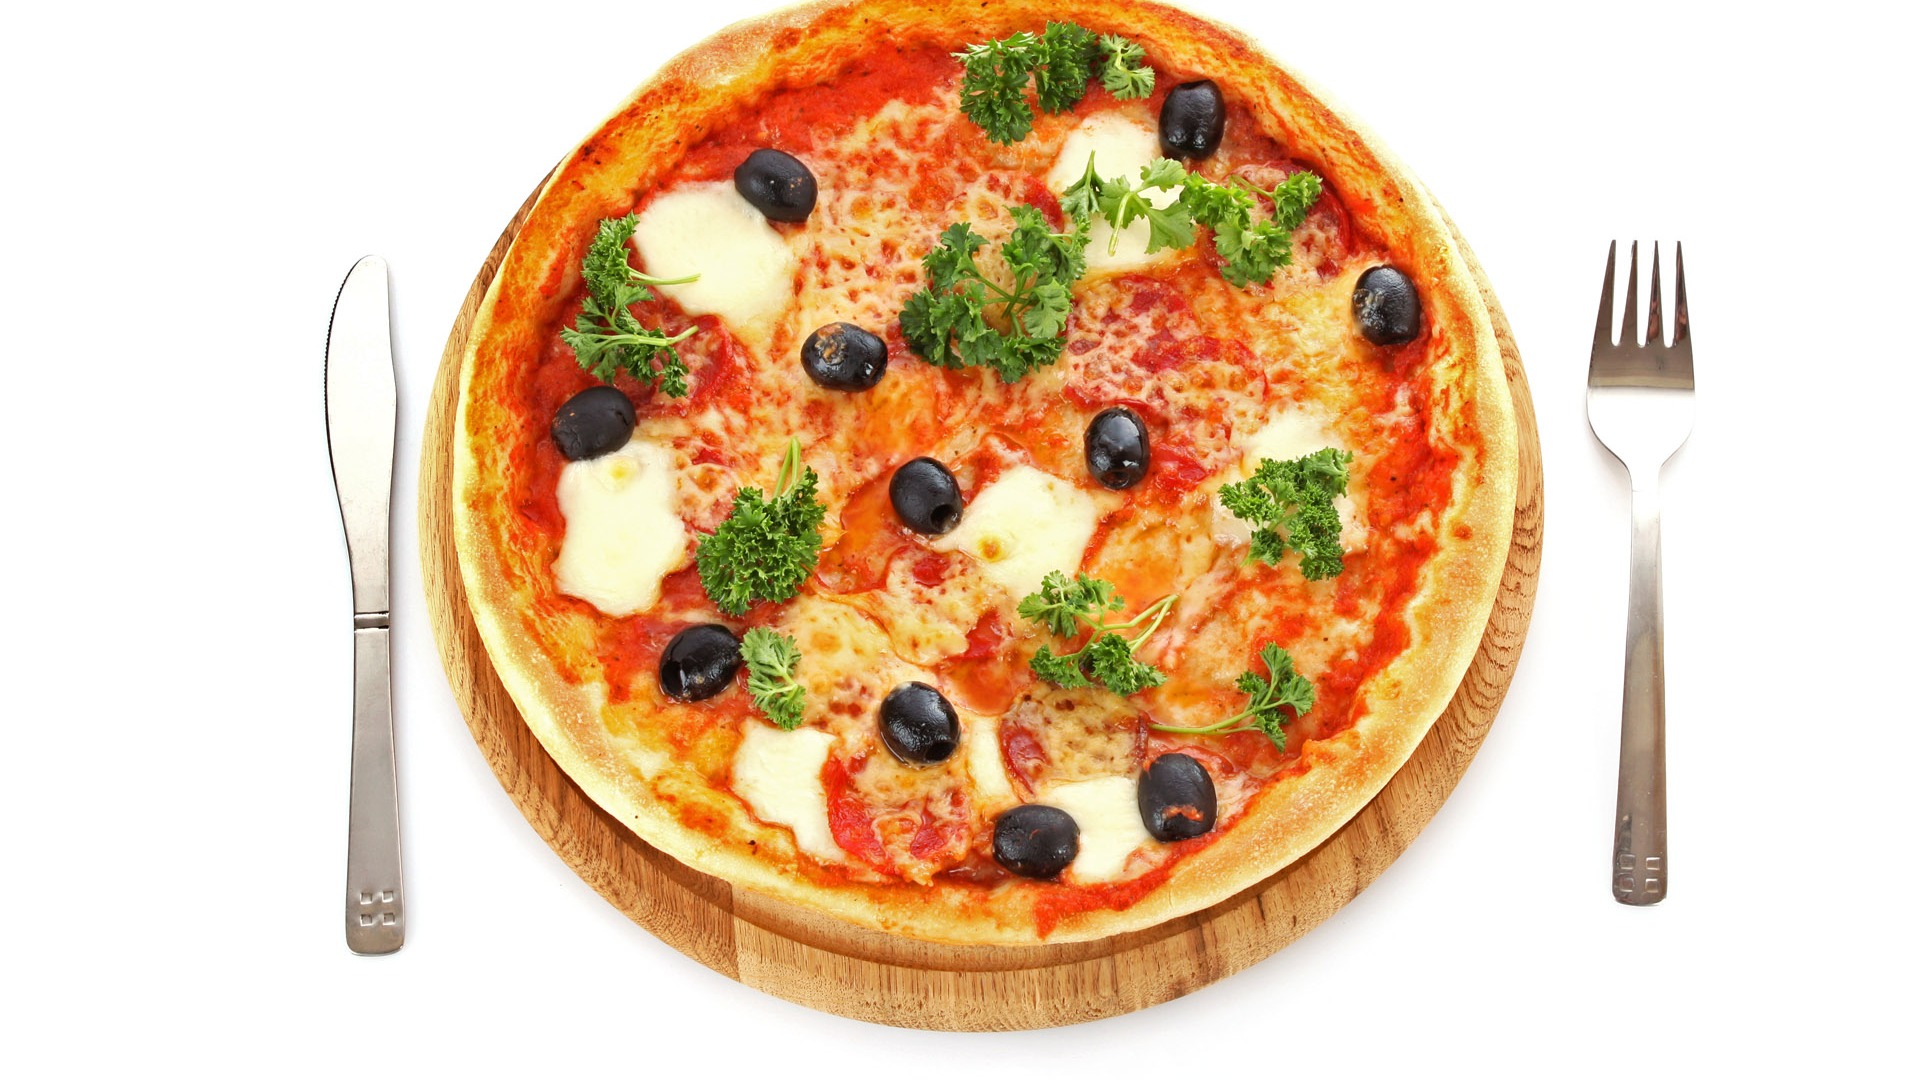 Fondos de pizzerías de Alimentos (4) #9 - 1920x1080